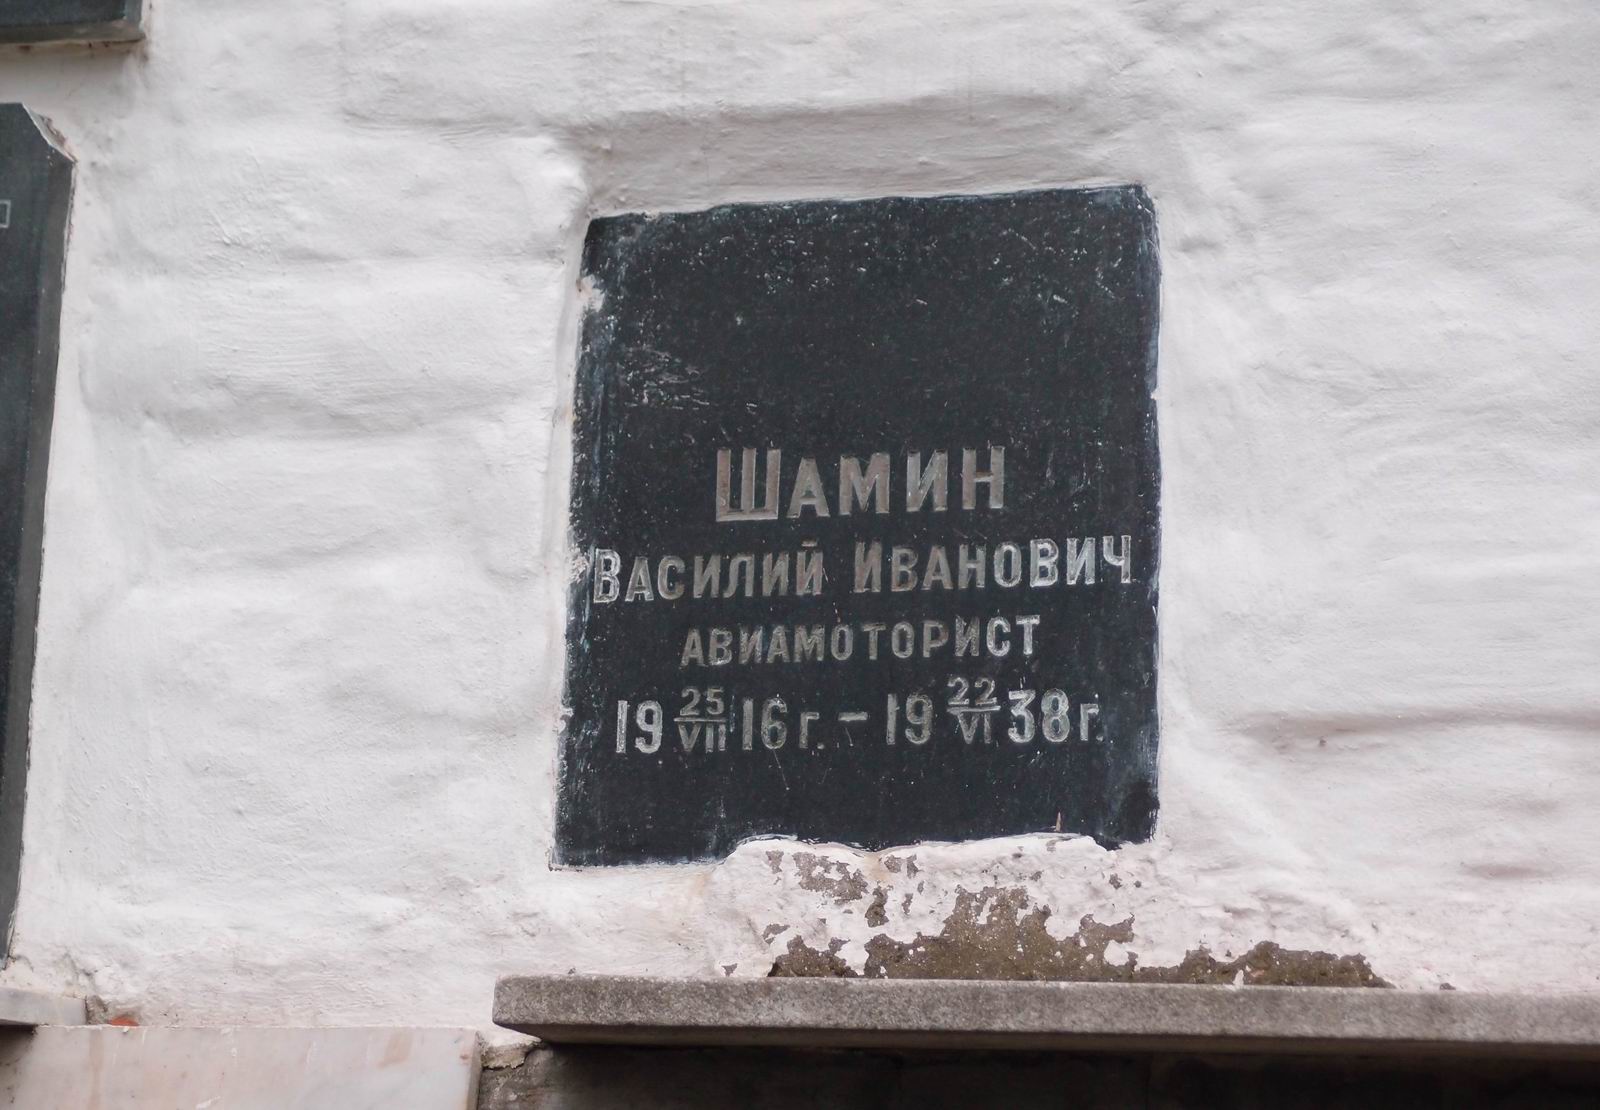 Плита на нише Шамина В.И. (1916-1938), на Новодевичьем кладбище (колумбарий [5]-8-2).